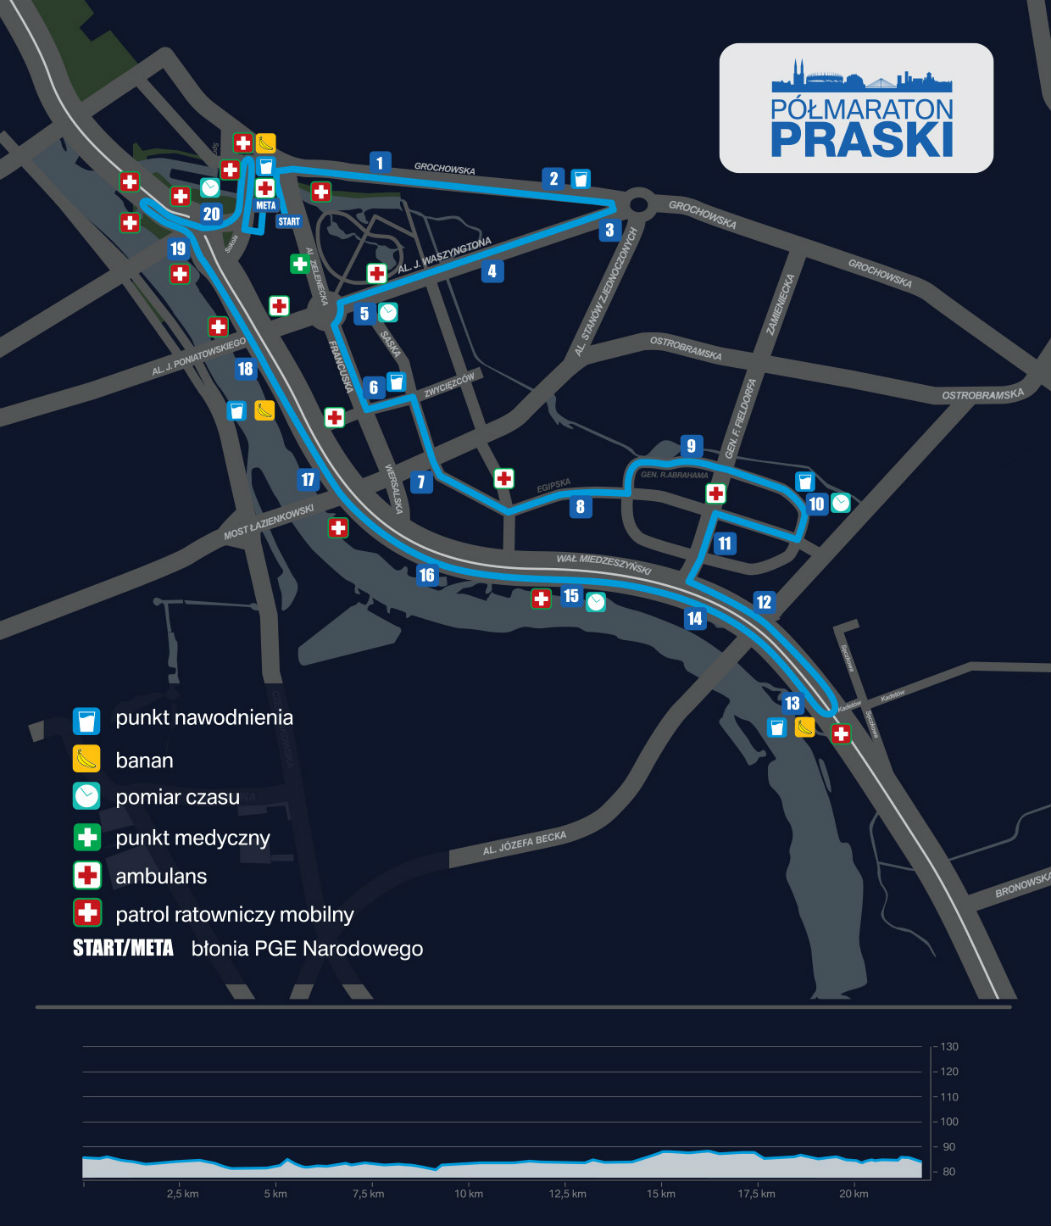 5-polmaraton-praski-czyli-szybki-bieg-wieczorowa-pora-02